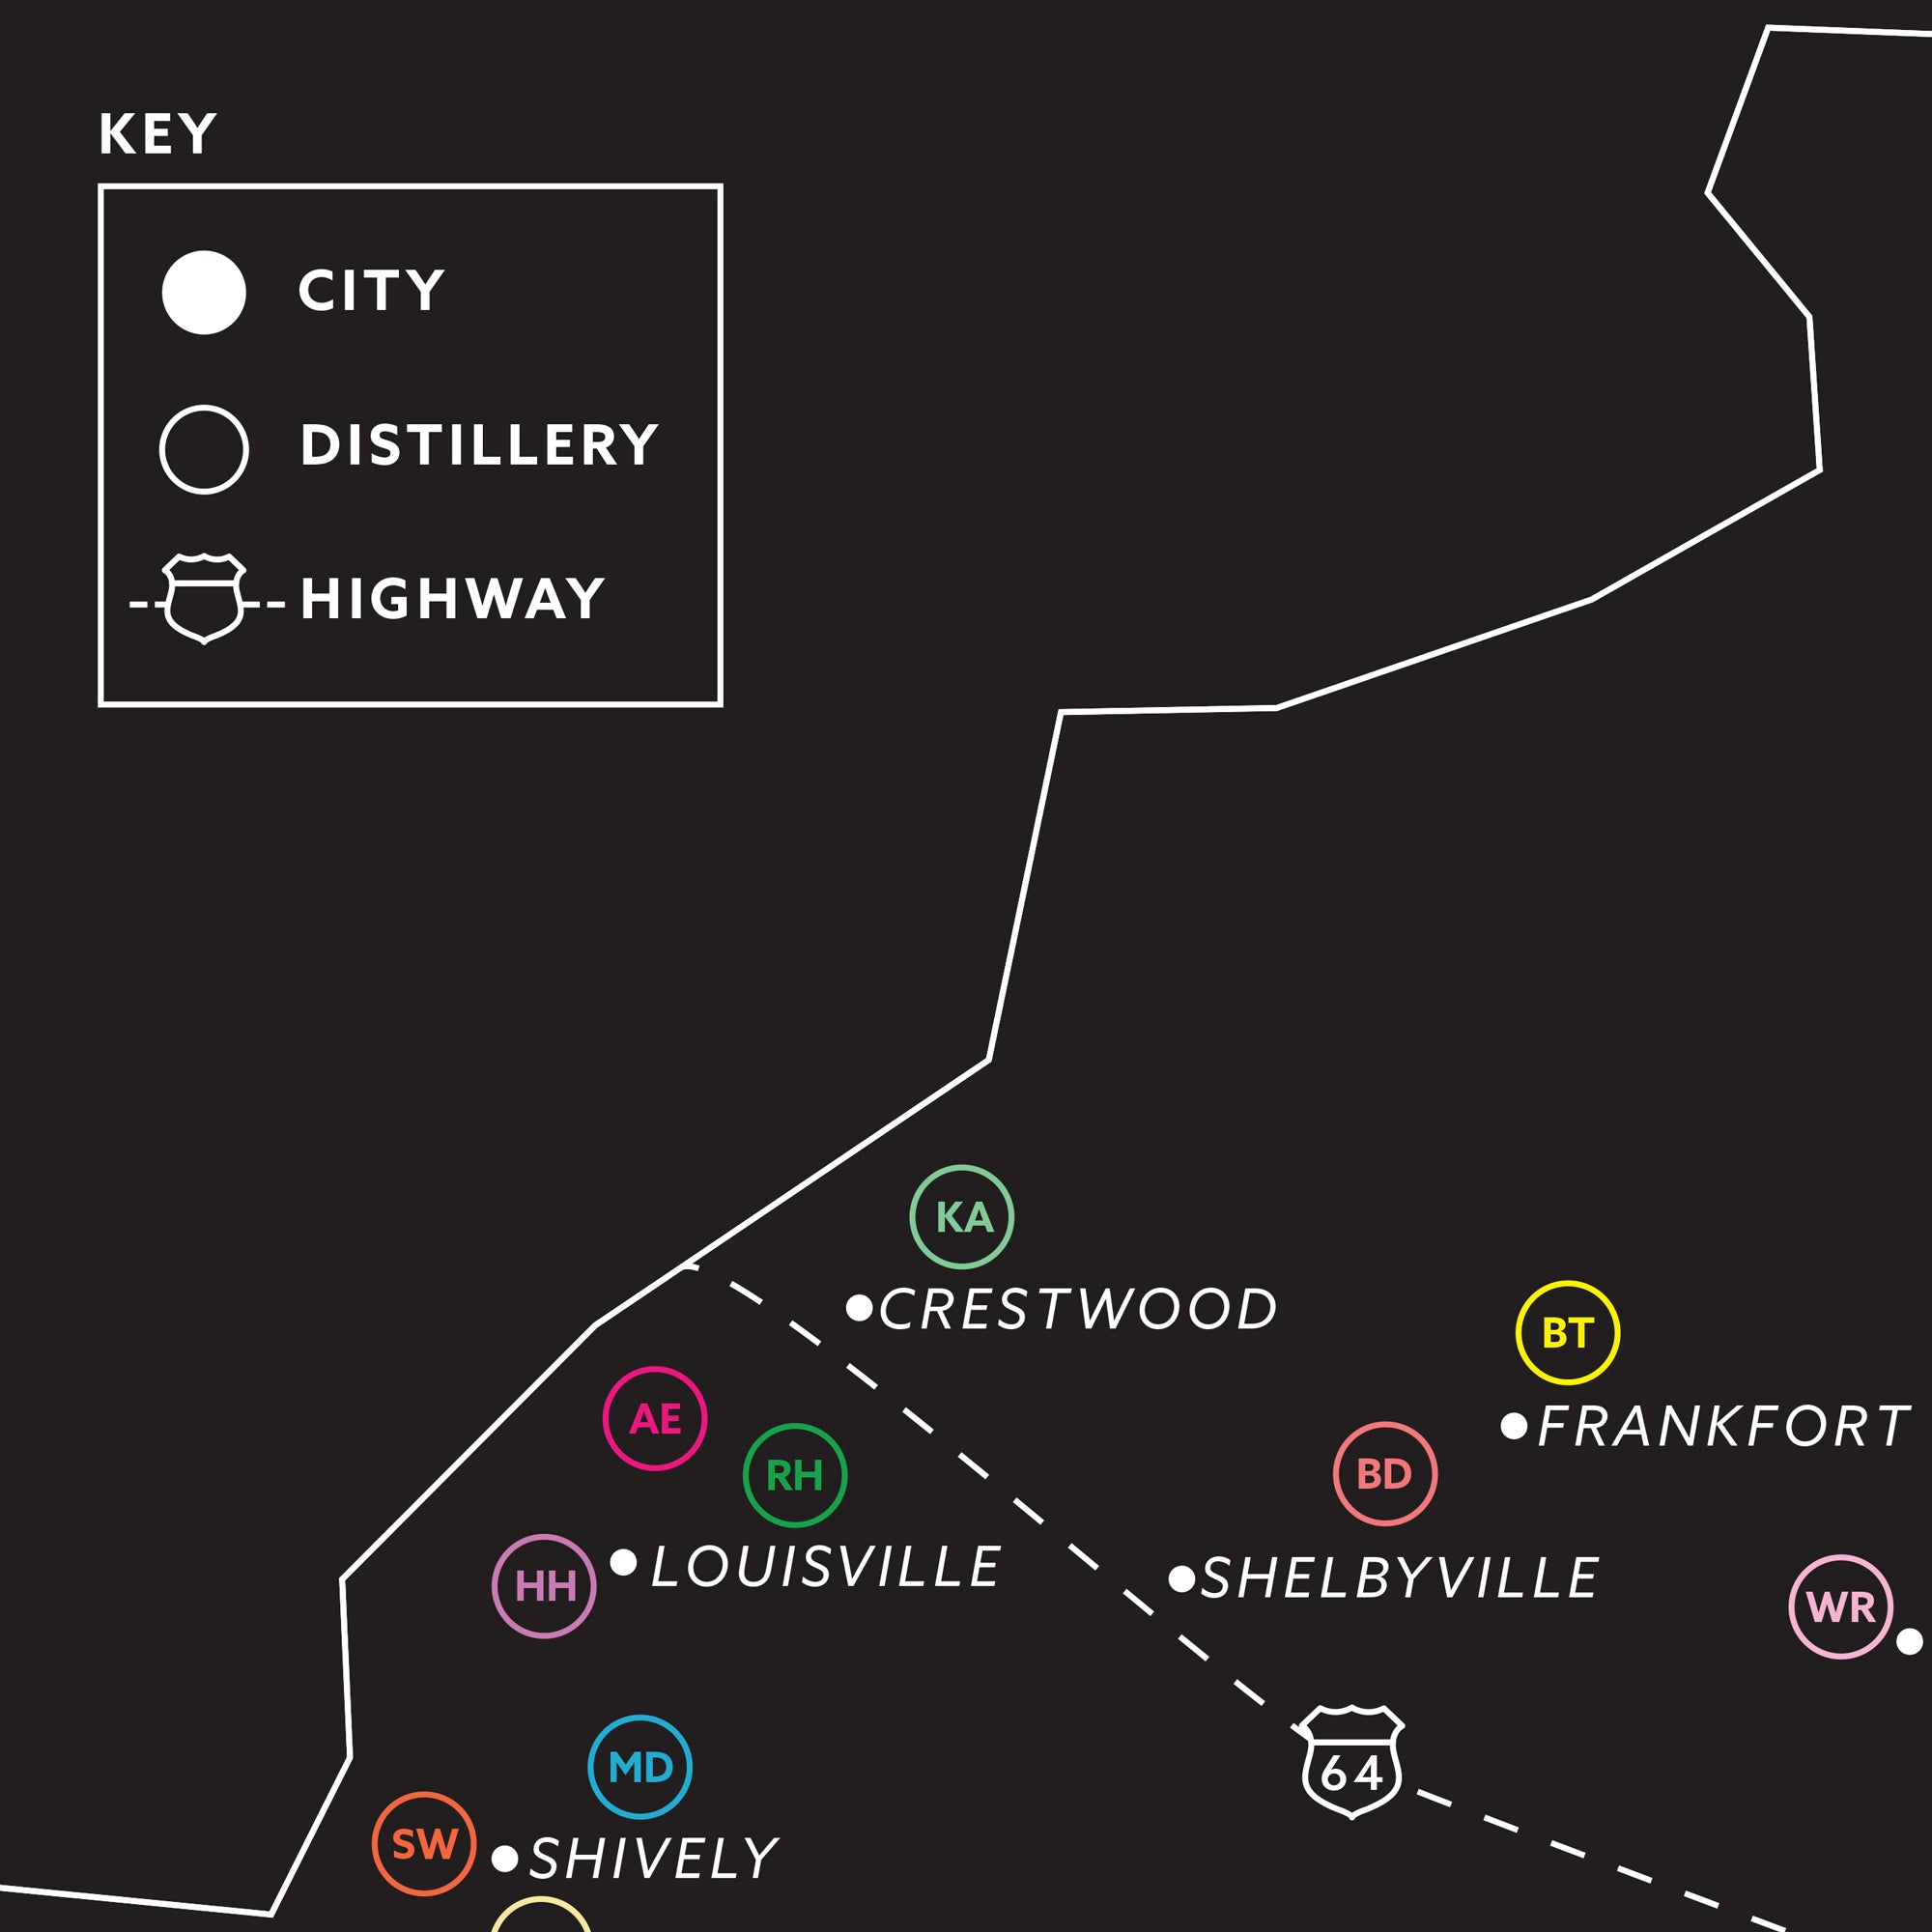 Kentucky's Major Bourbon Distilleries Map Poster